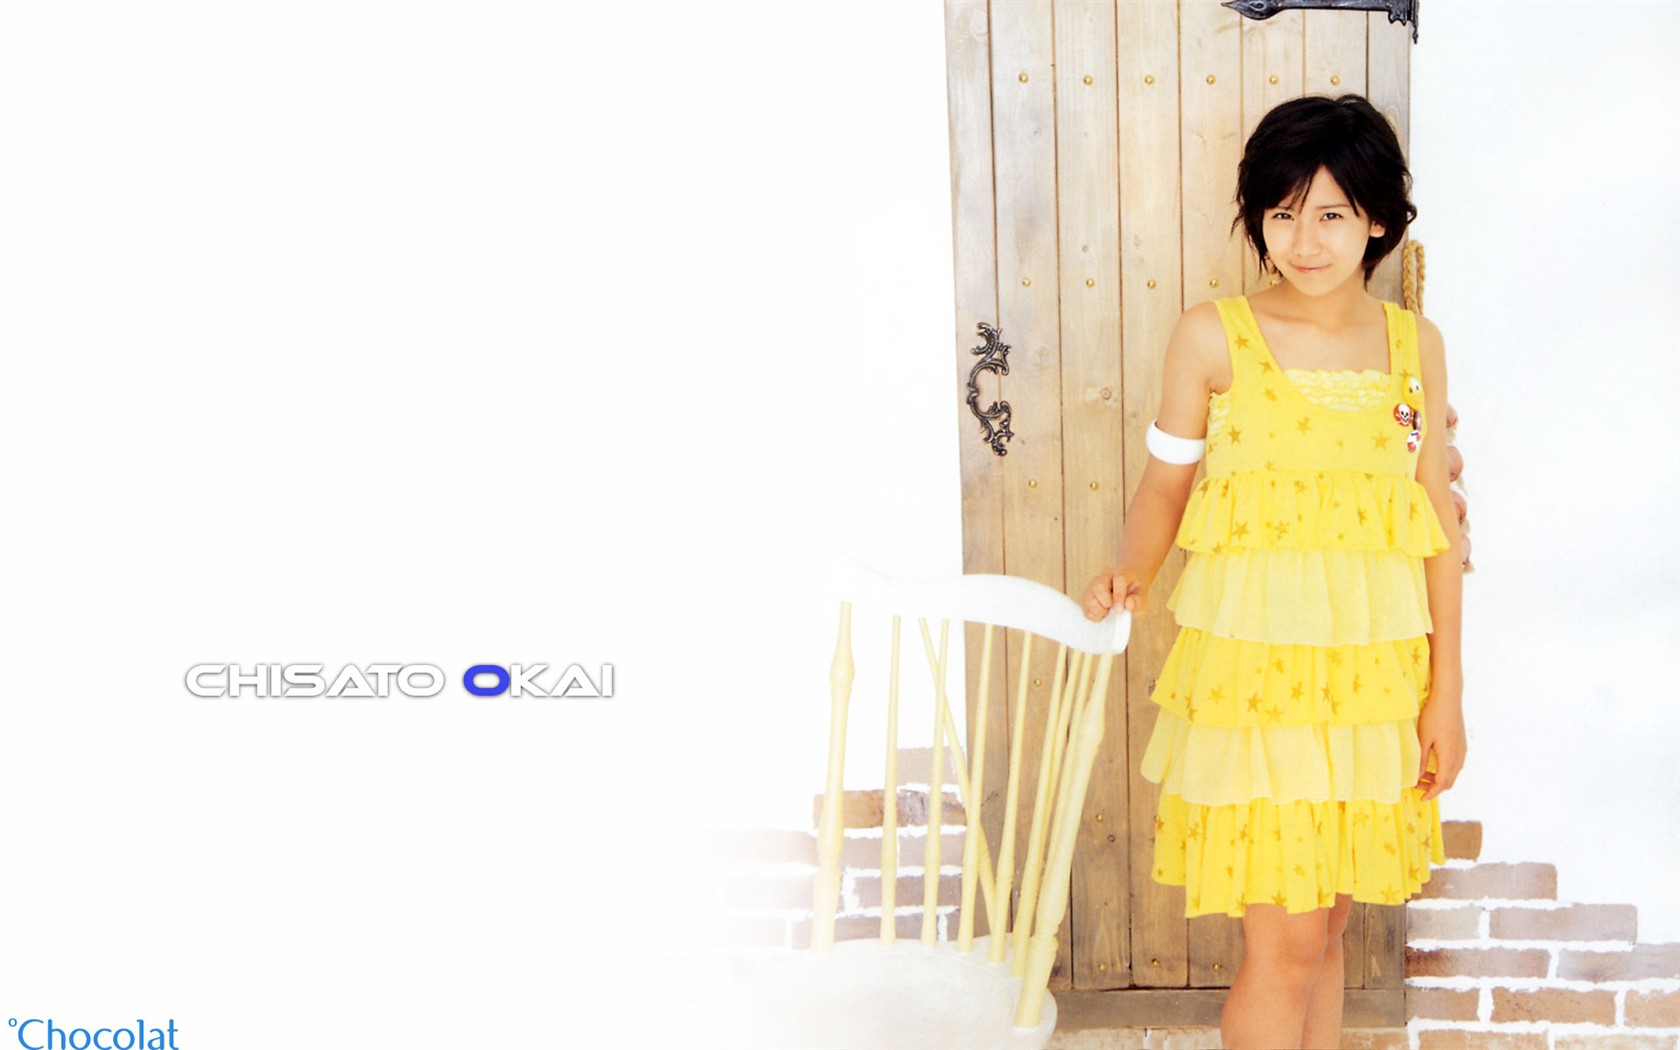 日本美少女组合Cute写真6 - 1680x1050